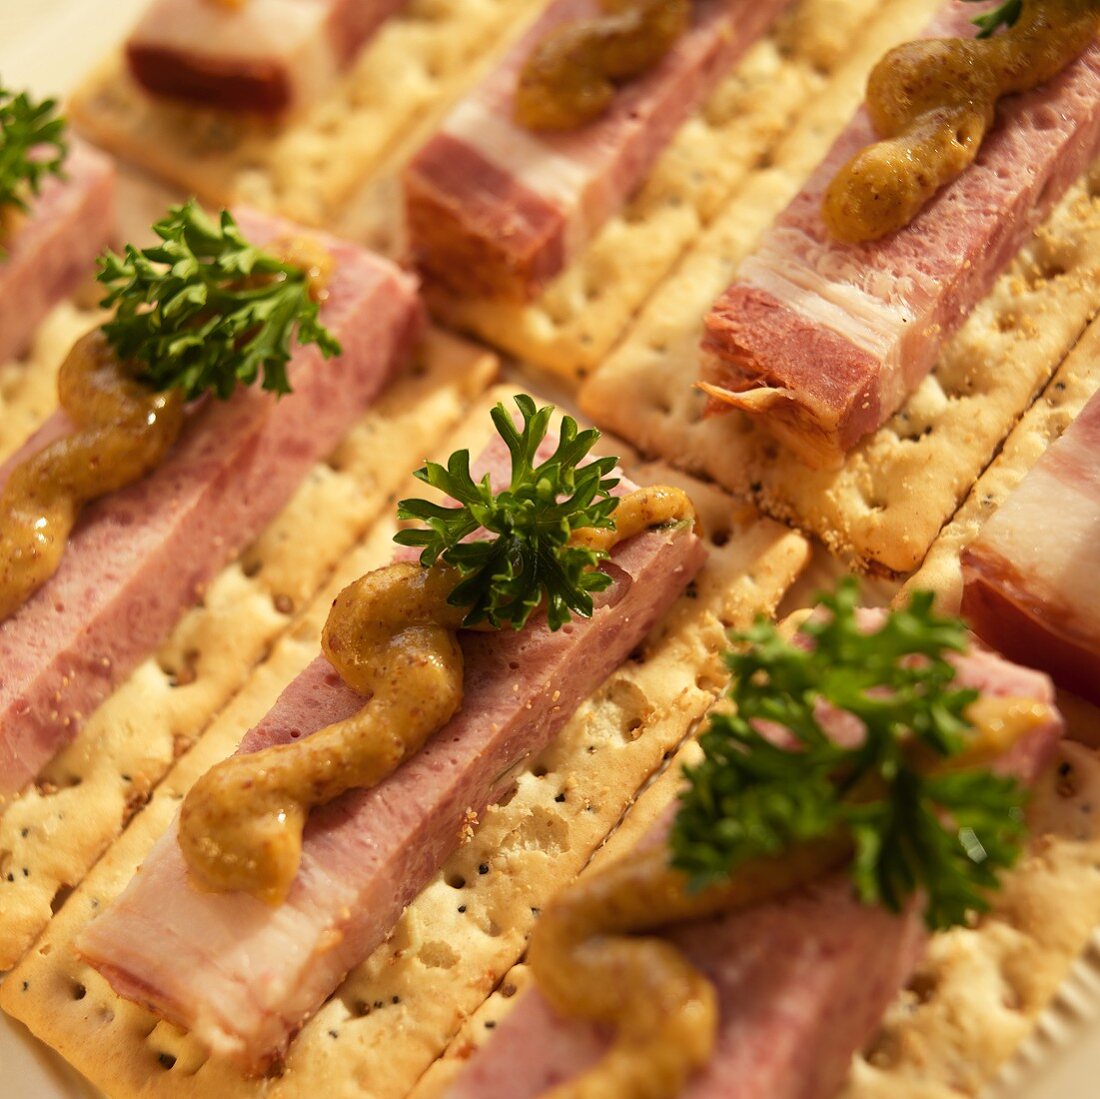 Schweinebauch (Cured Pork Belly) on Crackers with Brown Mustard